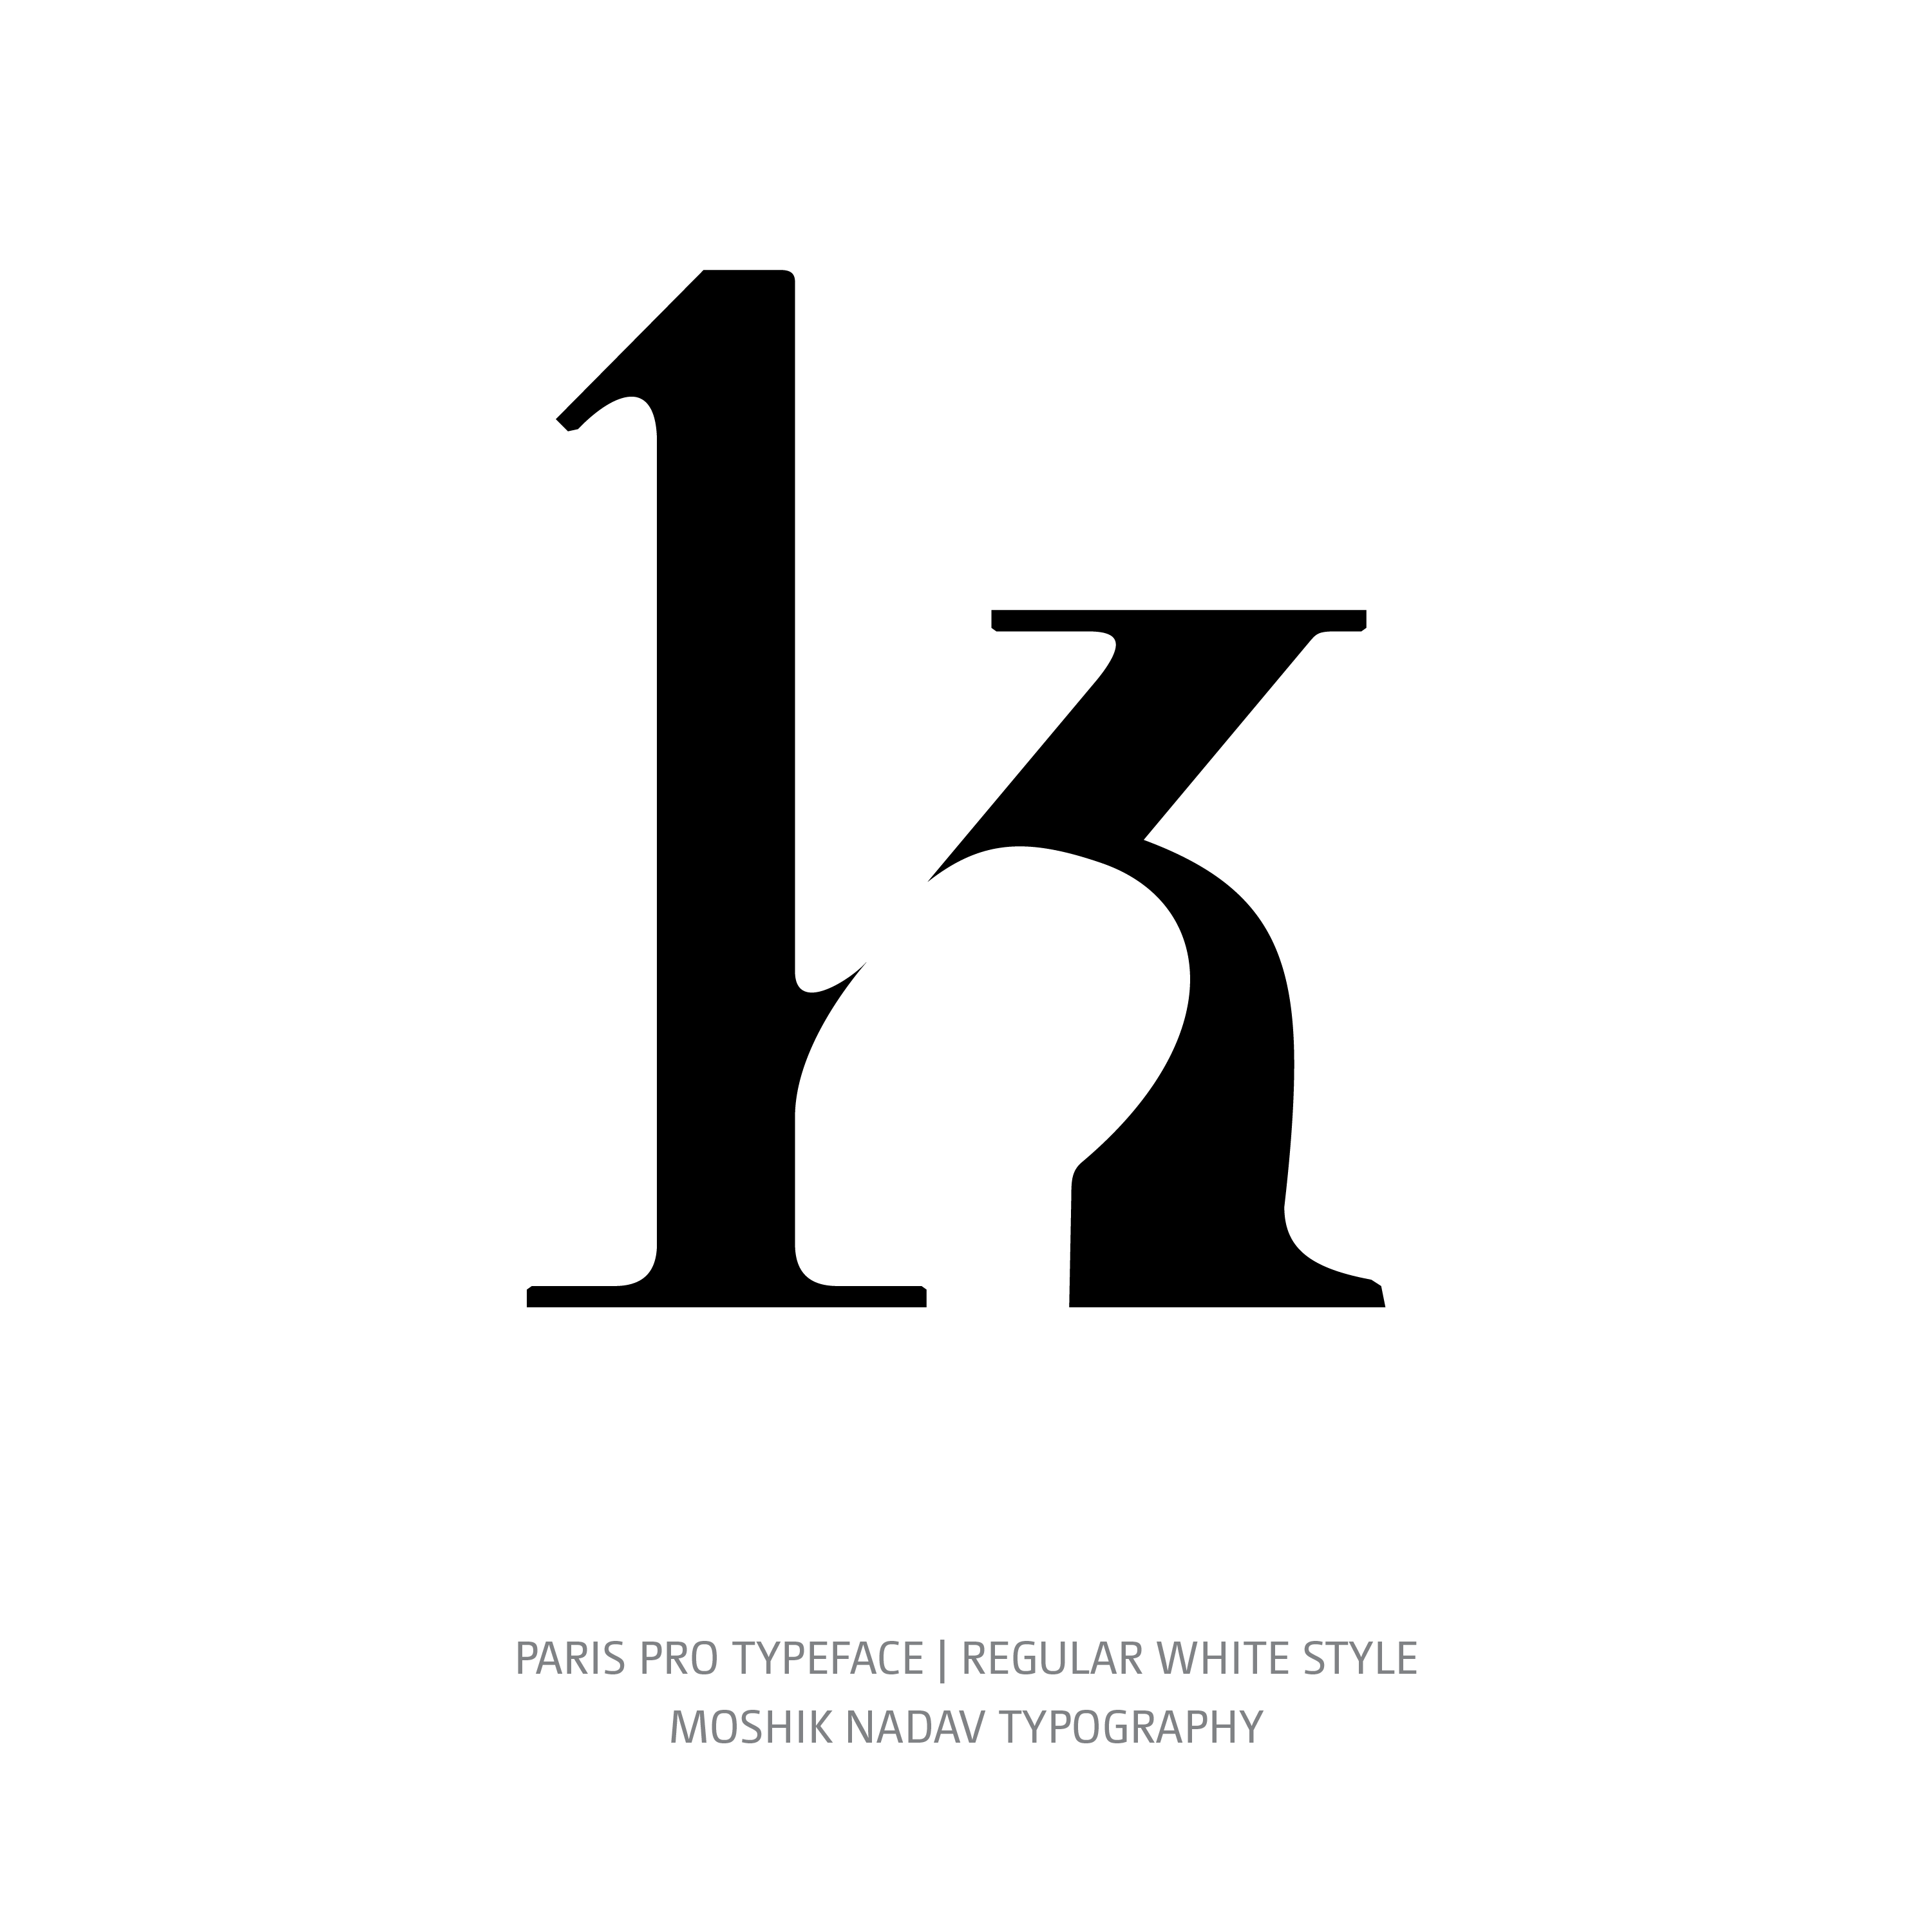 Paris Pro Typeface Regular White k